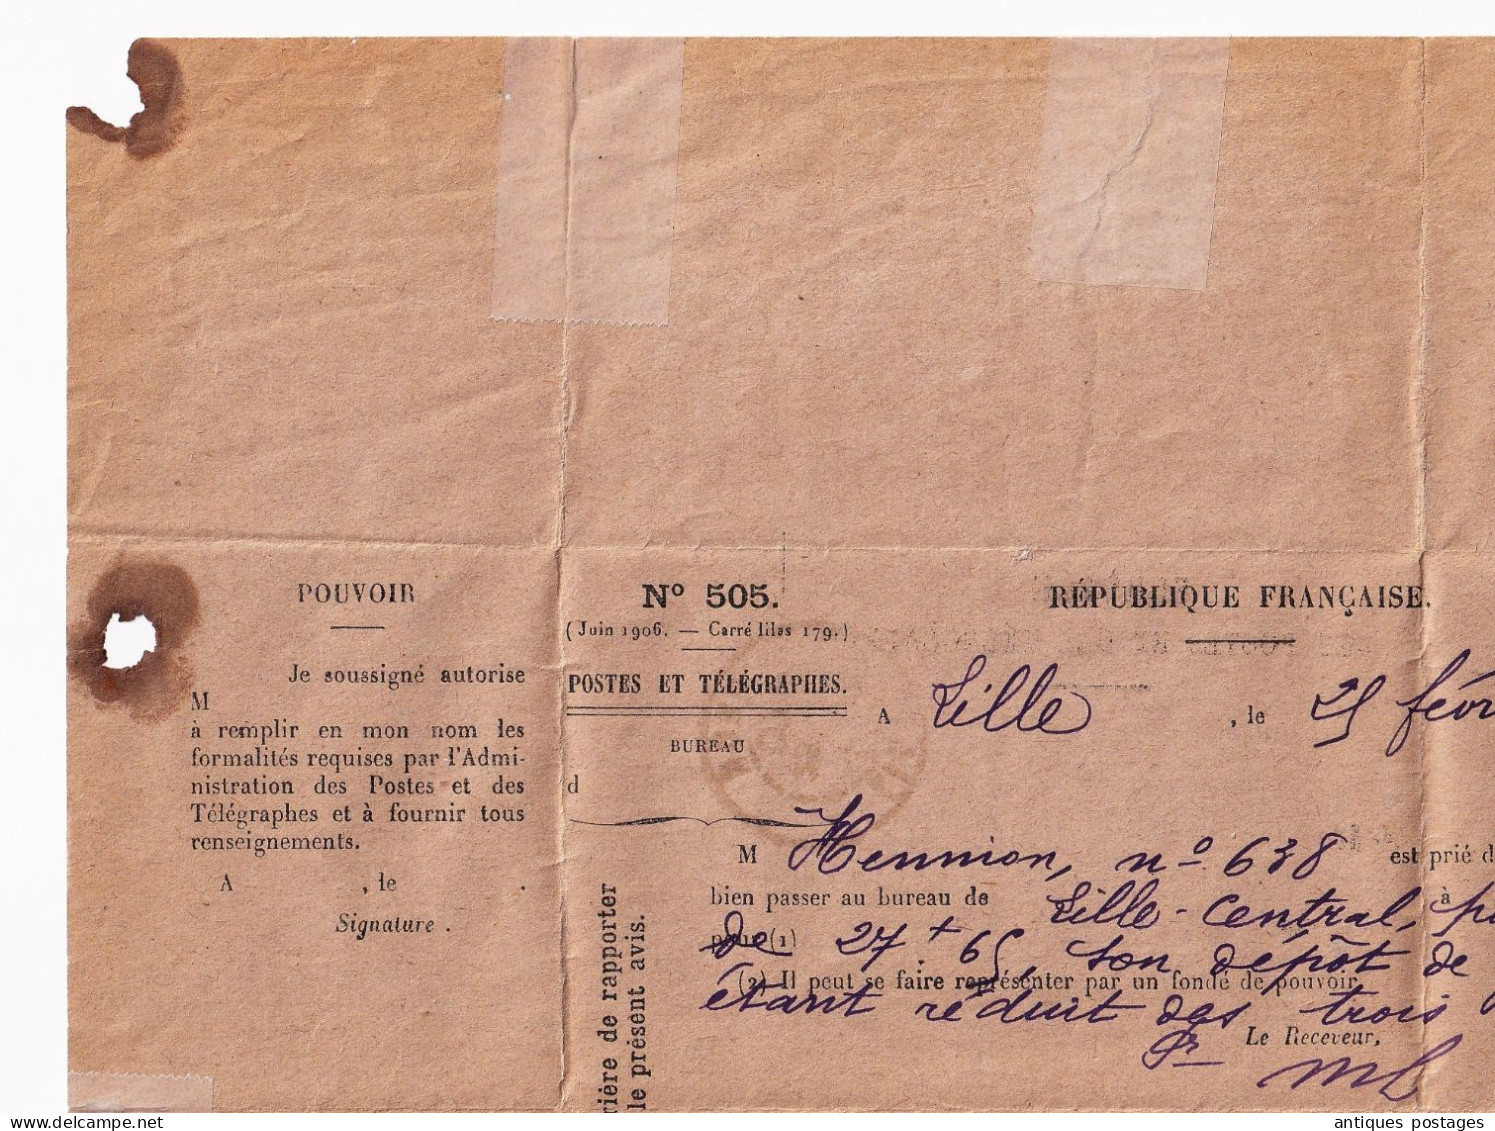 Lille 1907 Nord Service des Postes et des Télégraphes Dépot de Garantie Téléphonique